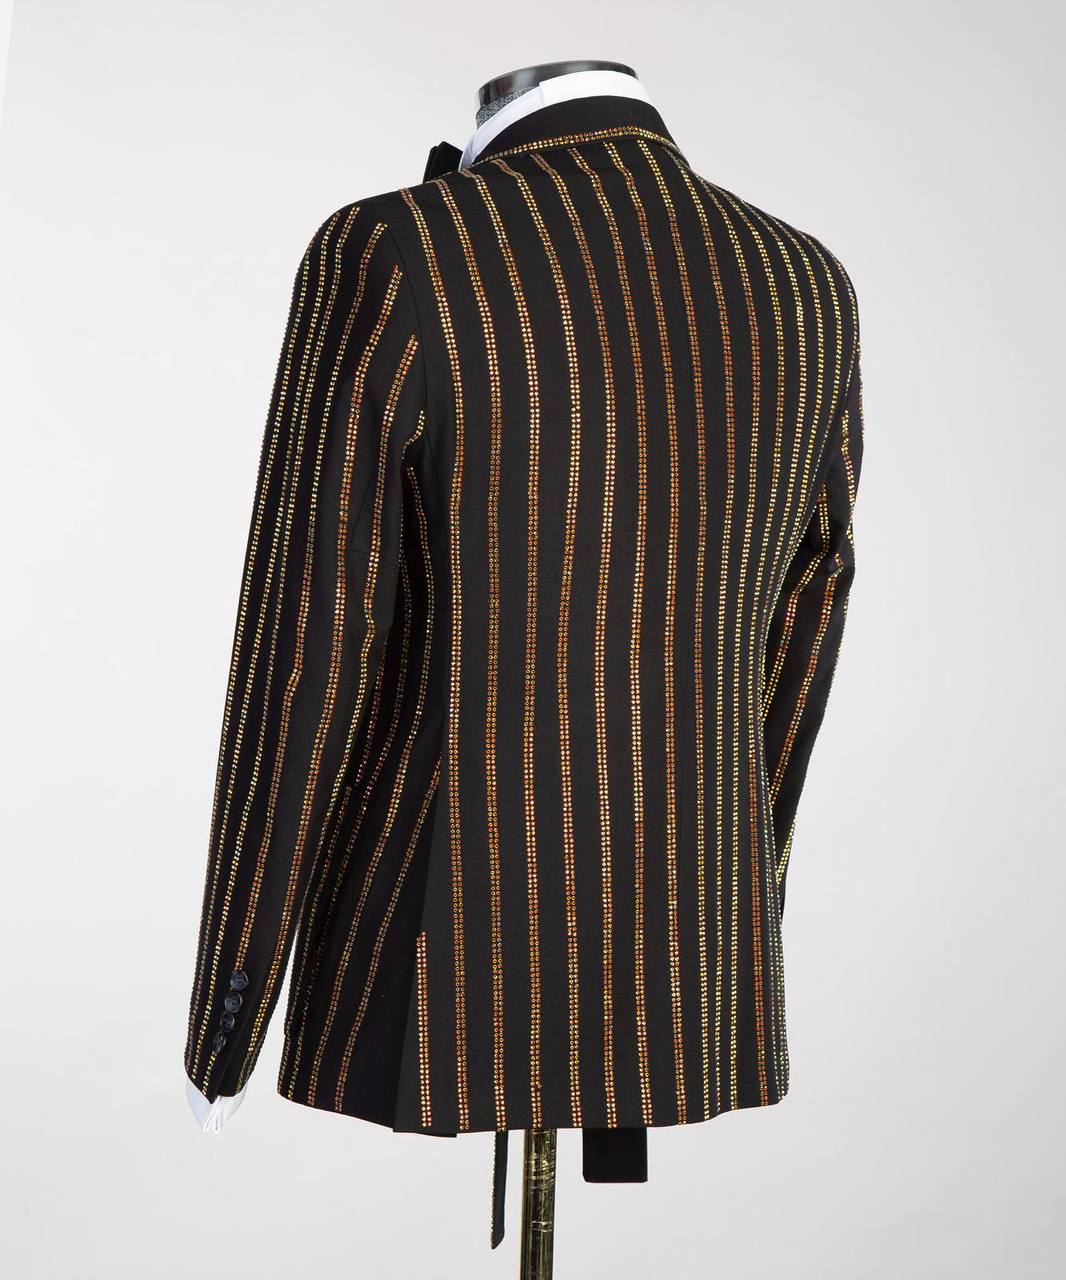 Men's Black Tuxedo, Gold Stripe Stoned Design